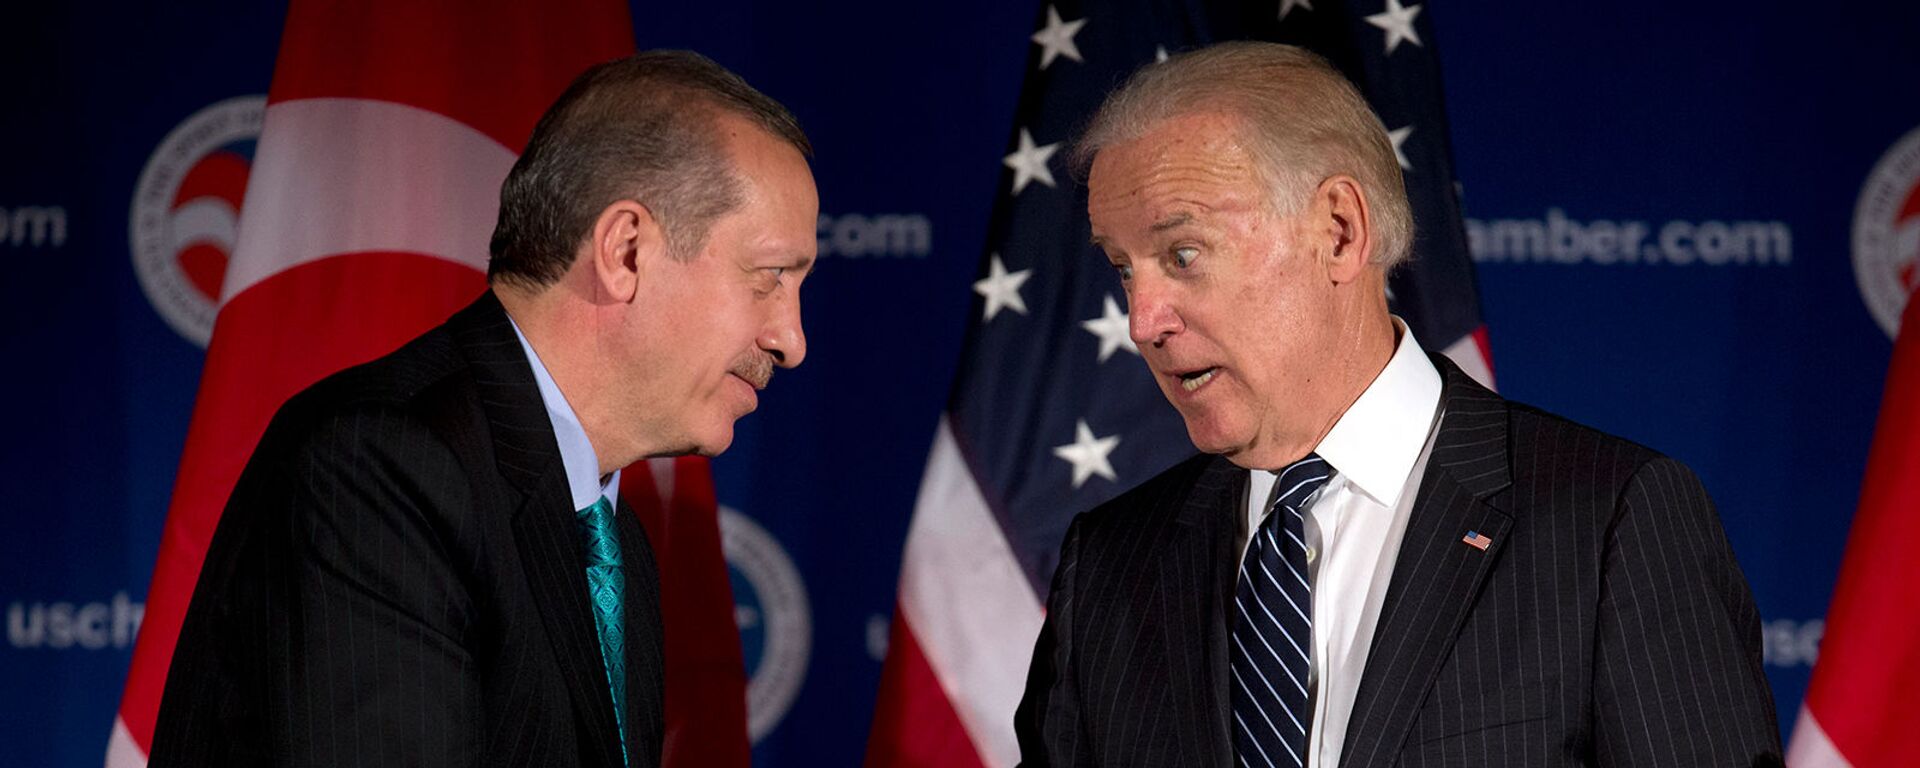 Вице-президент США Джо Байден и премьер-министр Турции Реджеп Тайип Эрдоган приветствуют друг друга во время круглого стола, организованного Торговой палатой США (16 мая 2013). Вашингтон - Sputnik Армения, 1920, 26.04.2021